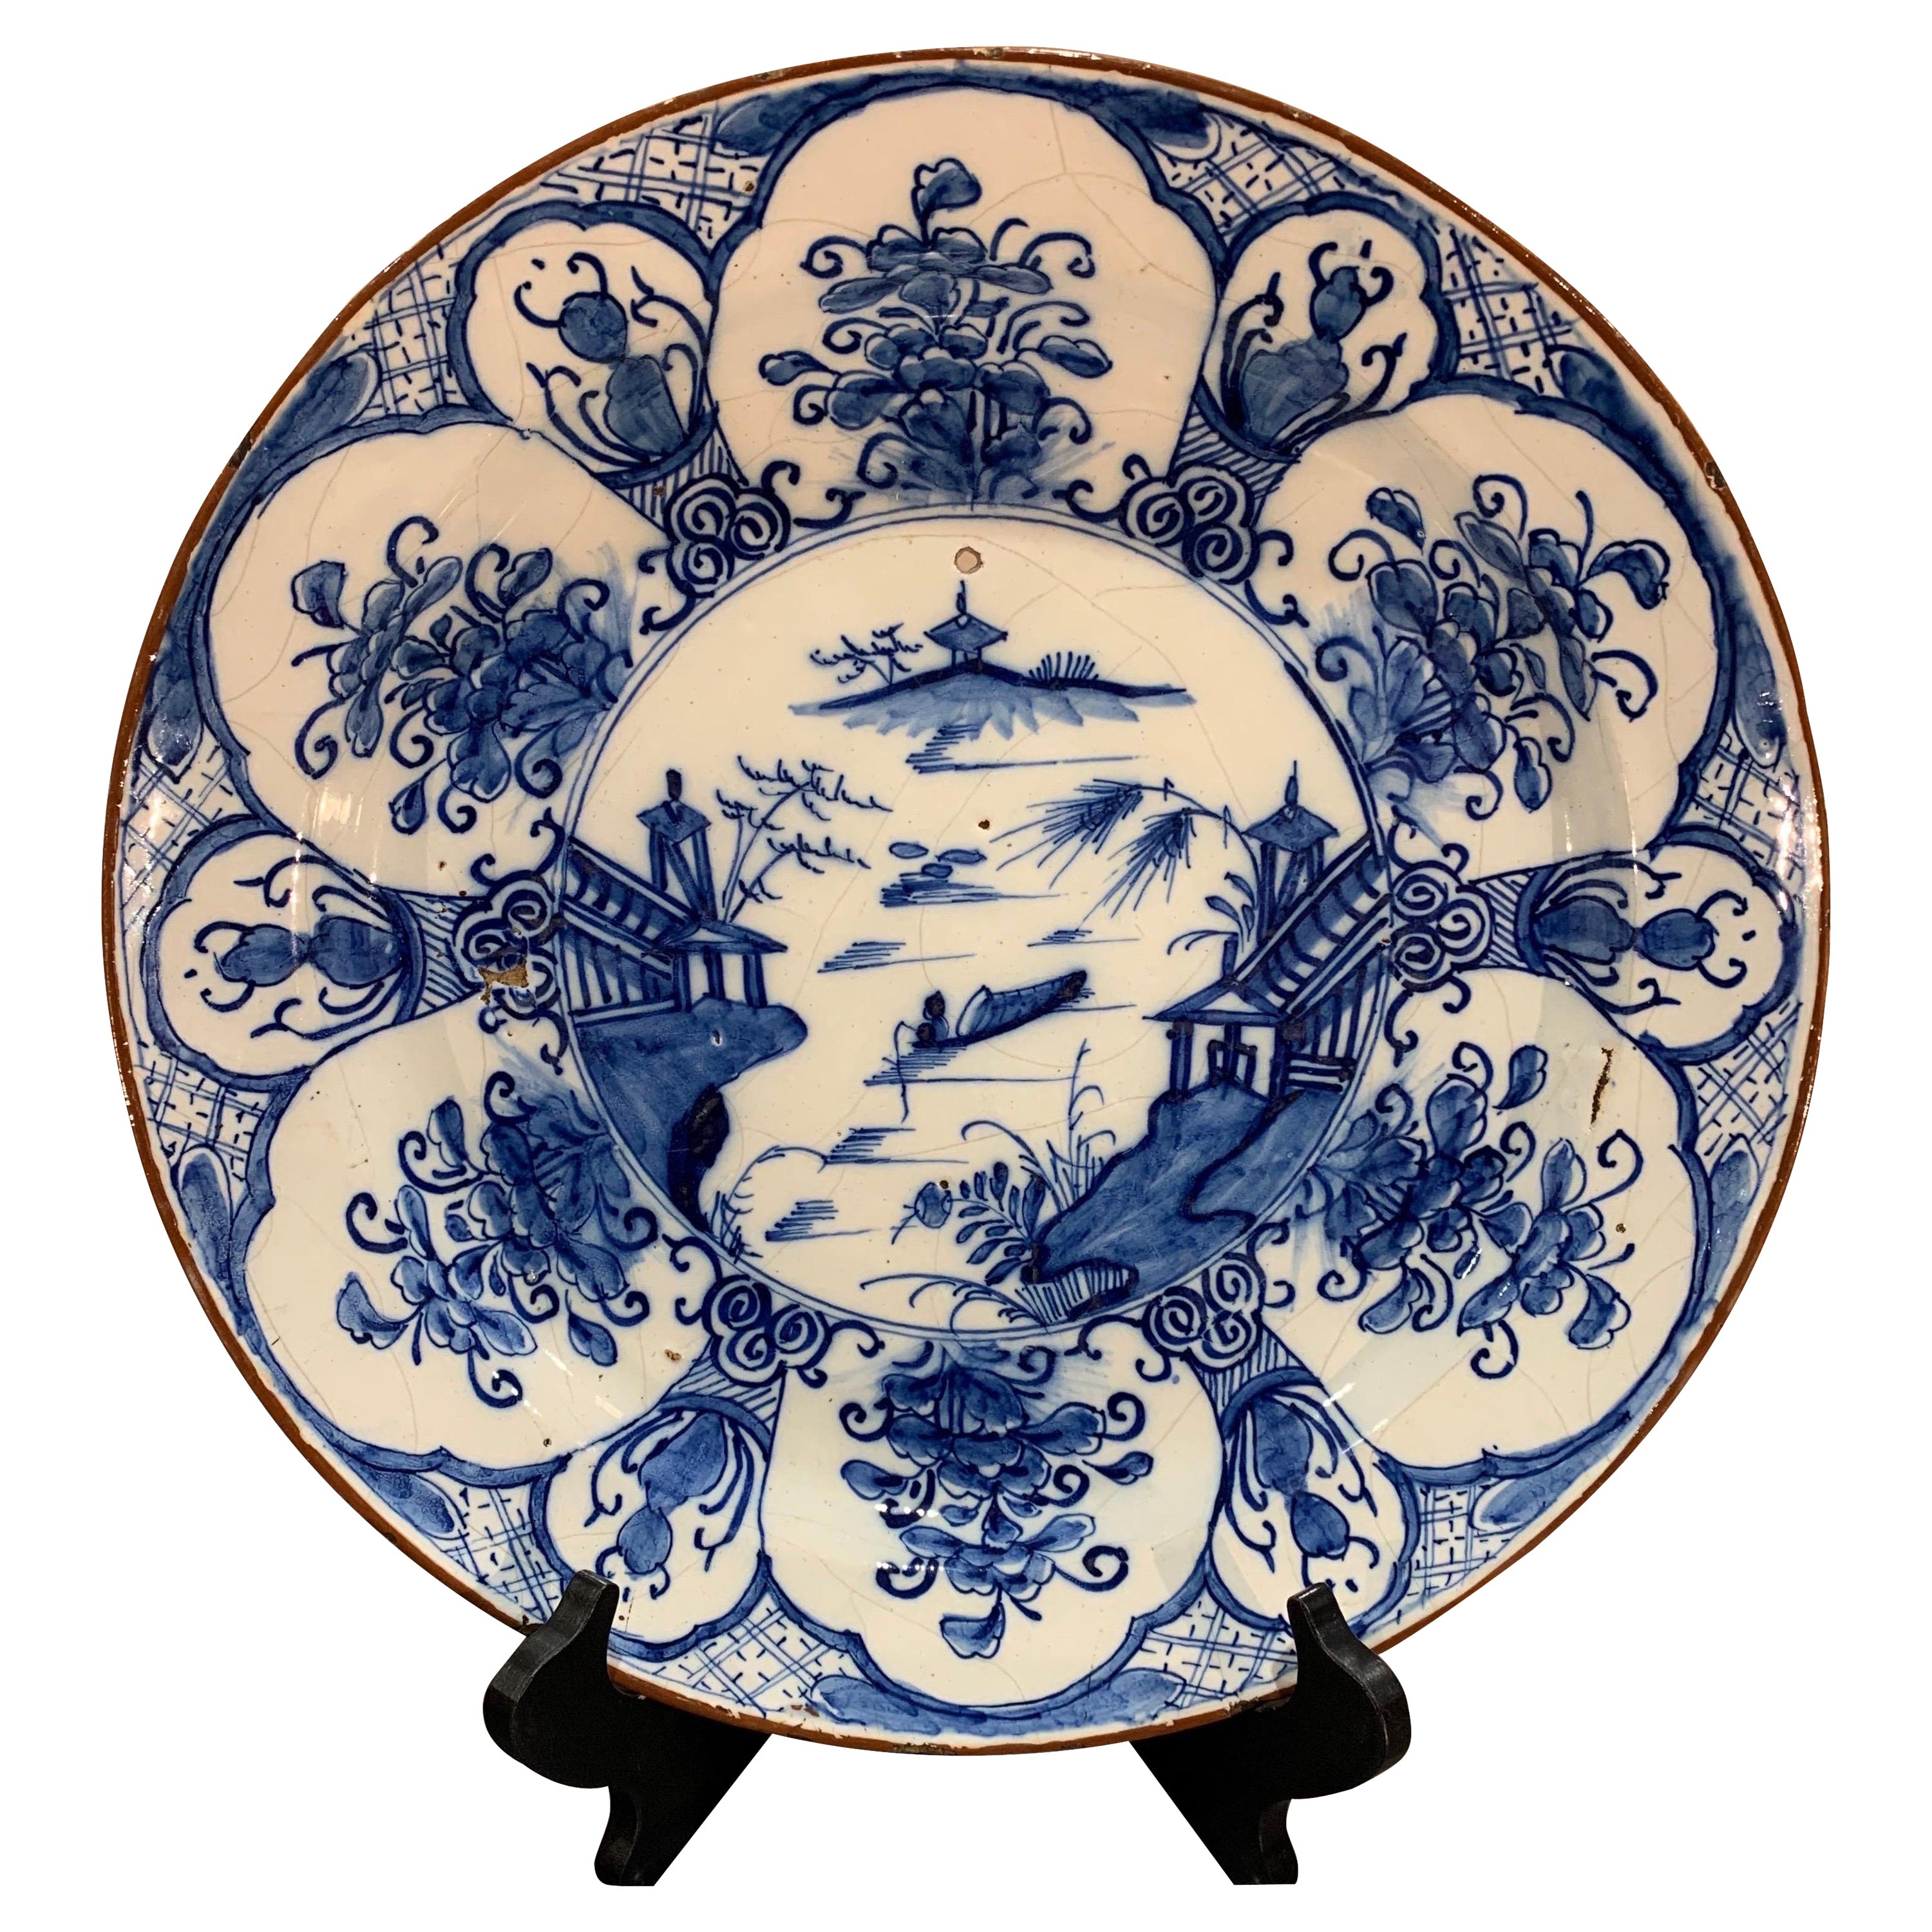 Plat à motif de Delft hollandais du 18ème siècle peint à la main avec chinoiserie